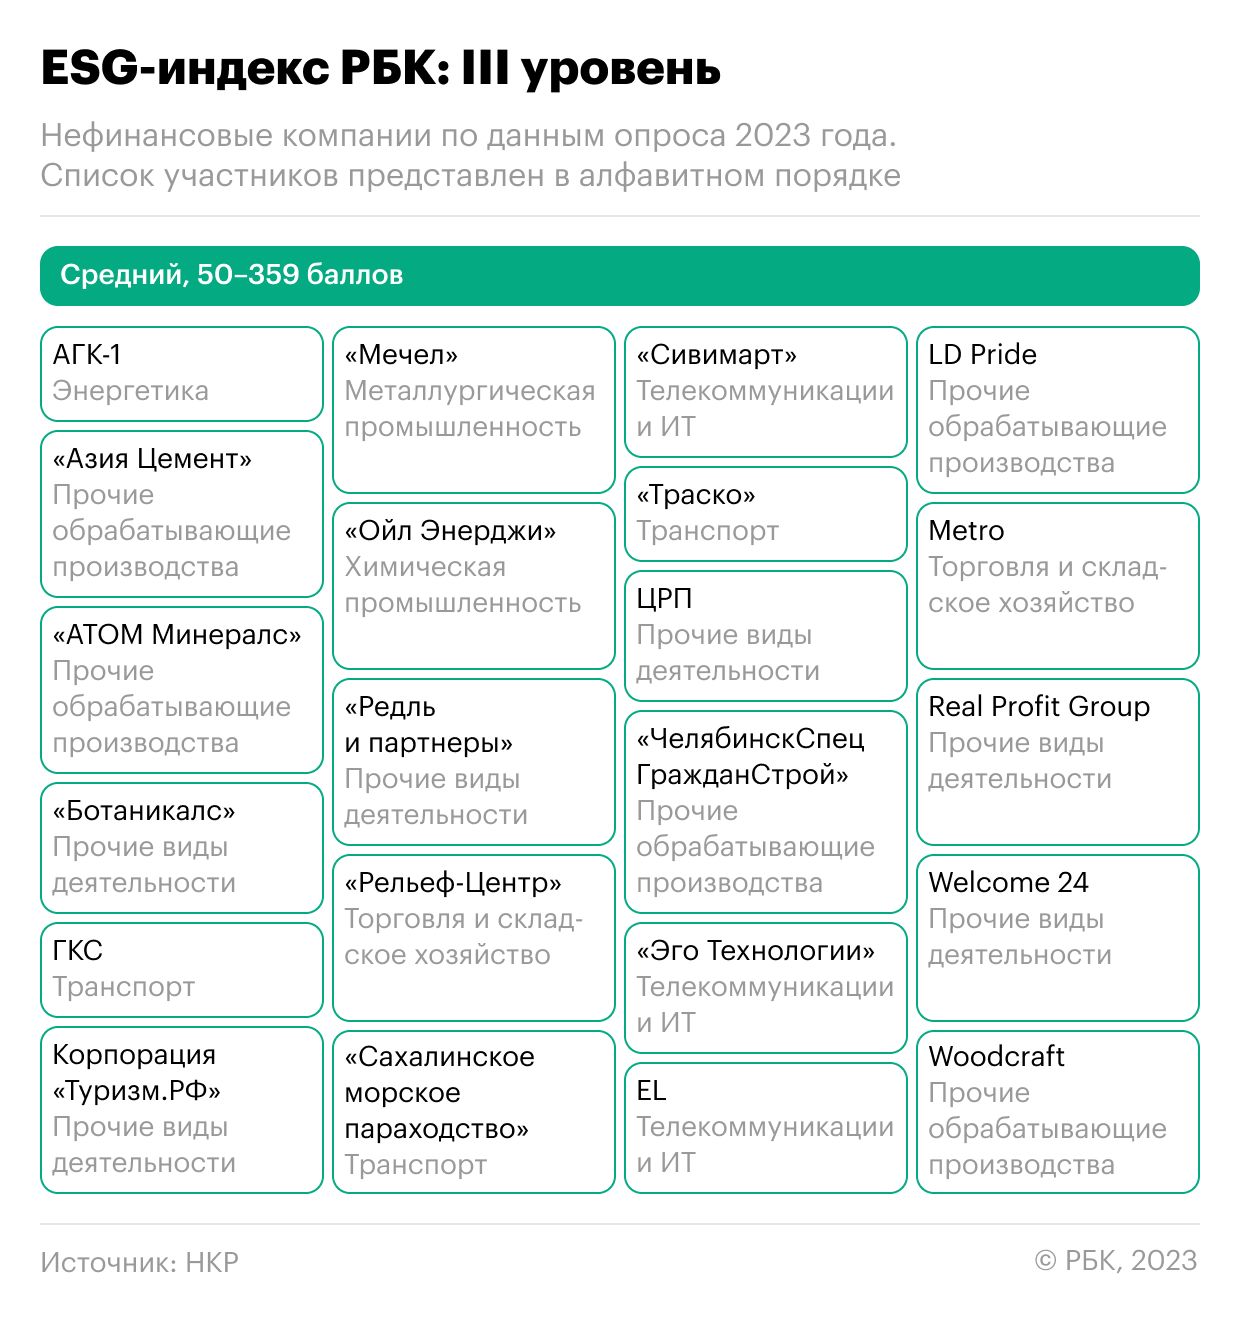 Заводы «ЧелябинскСпецГражданСтрой» и LD Pride вошли в рейтинг ESG-индекса РБК и НКР